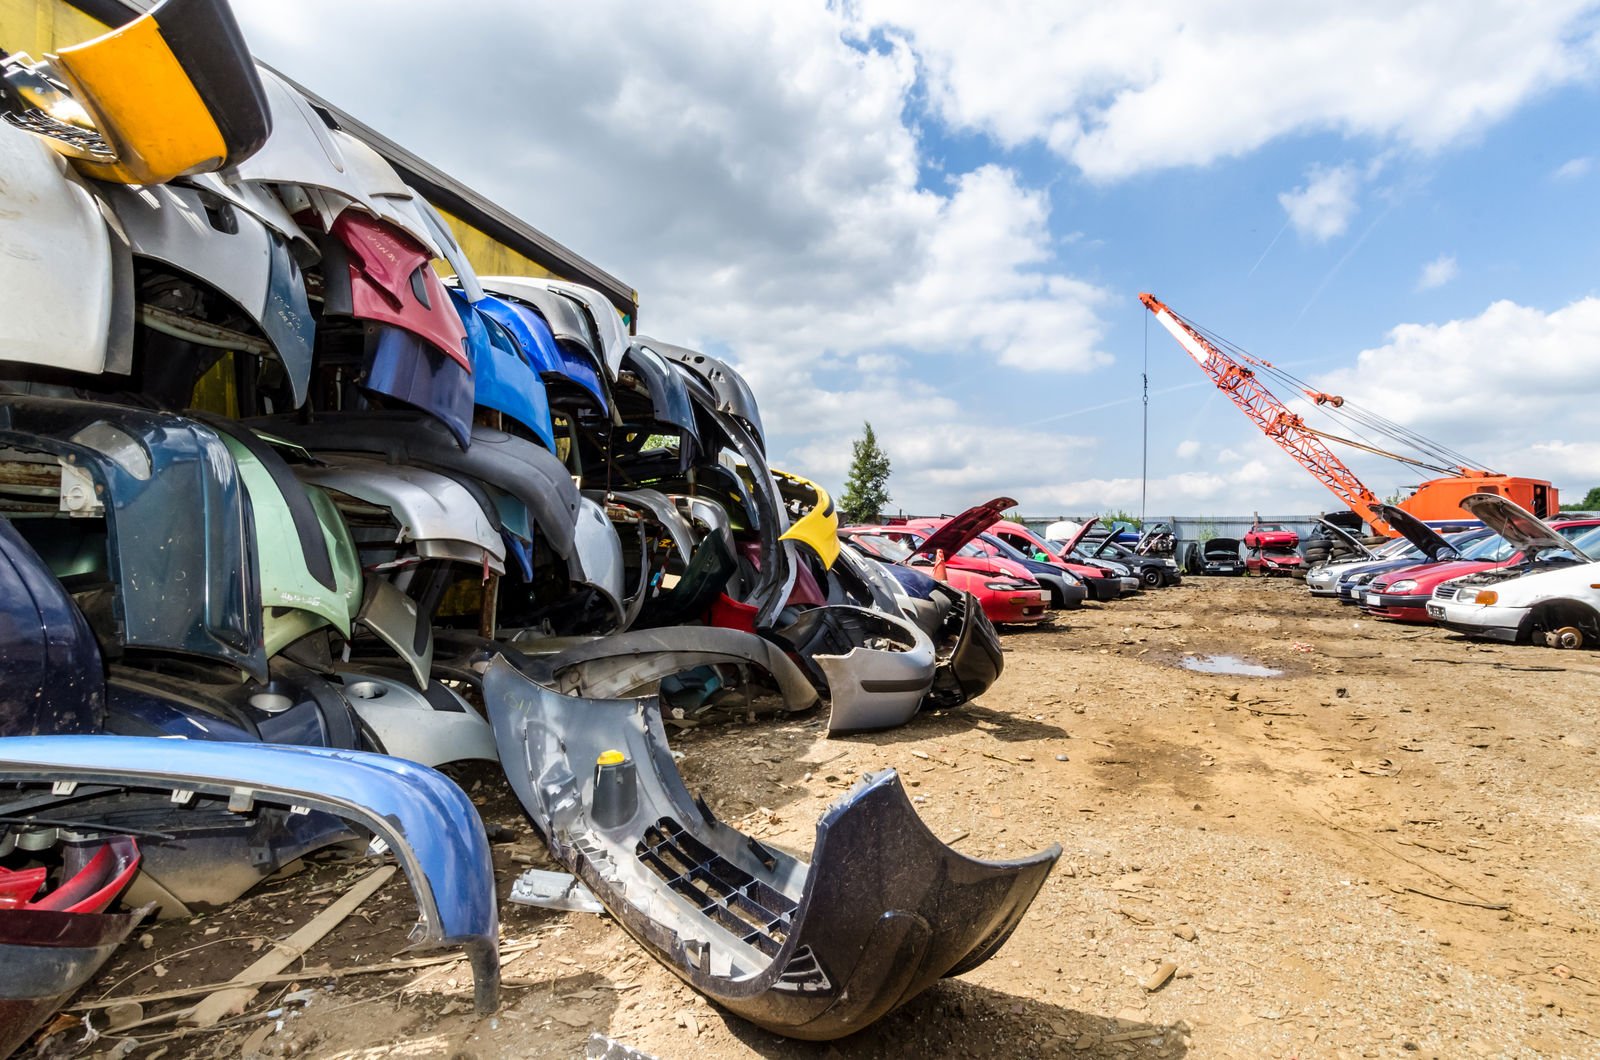 Scrap car parts in a junkyard